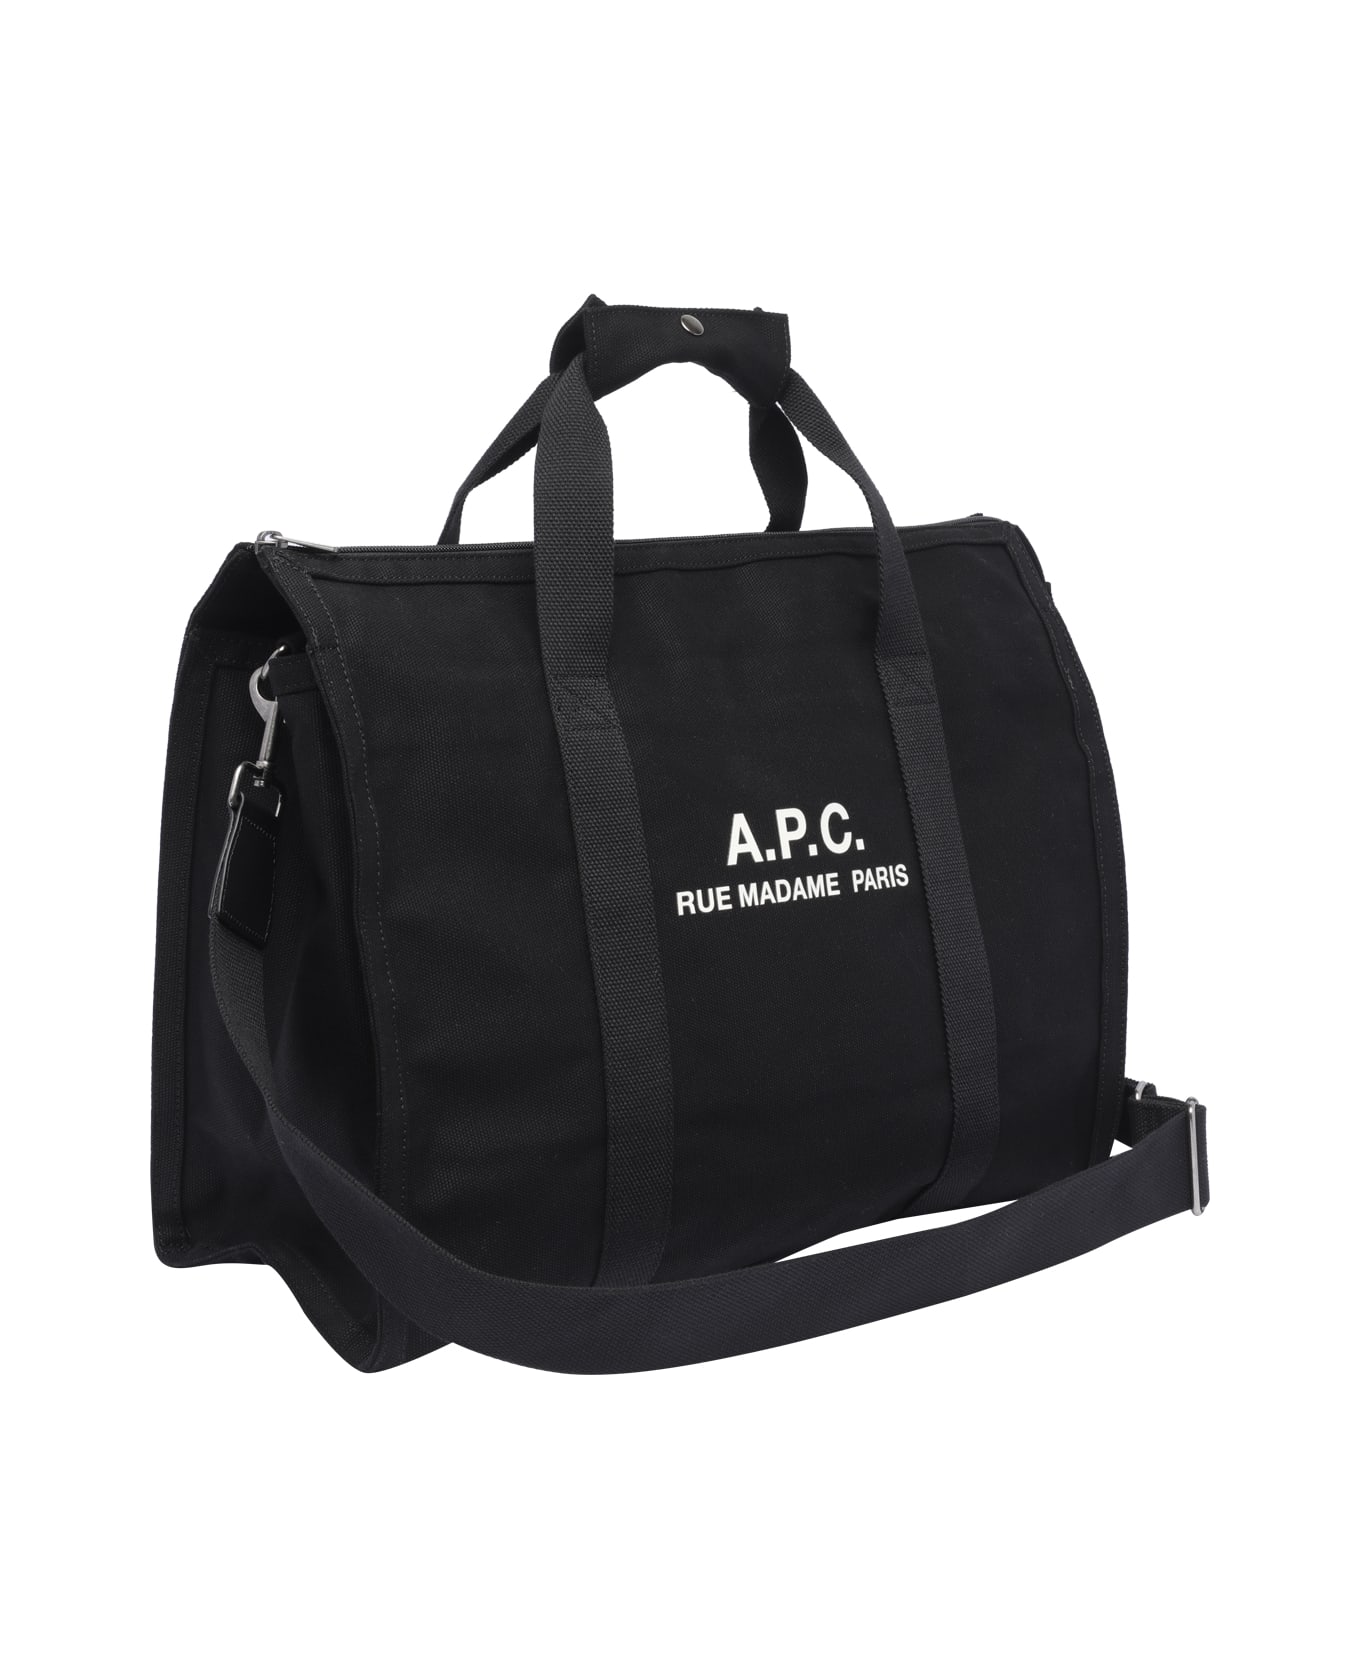 A.P.C. Gym Bag Recuperation - Black